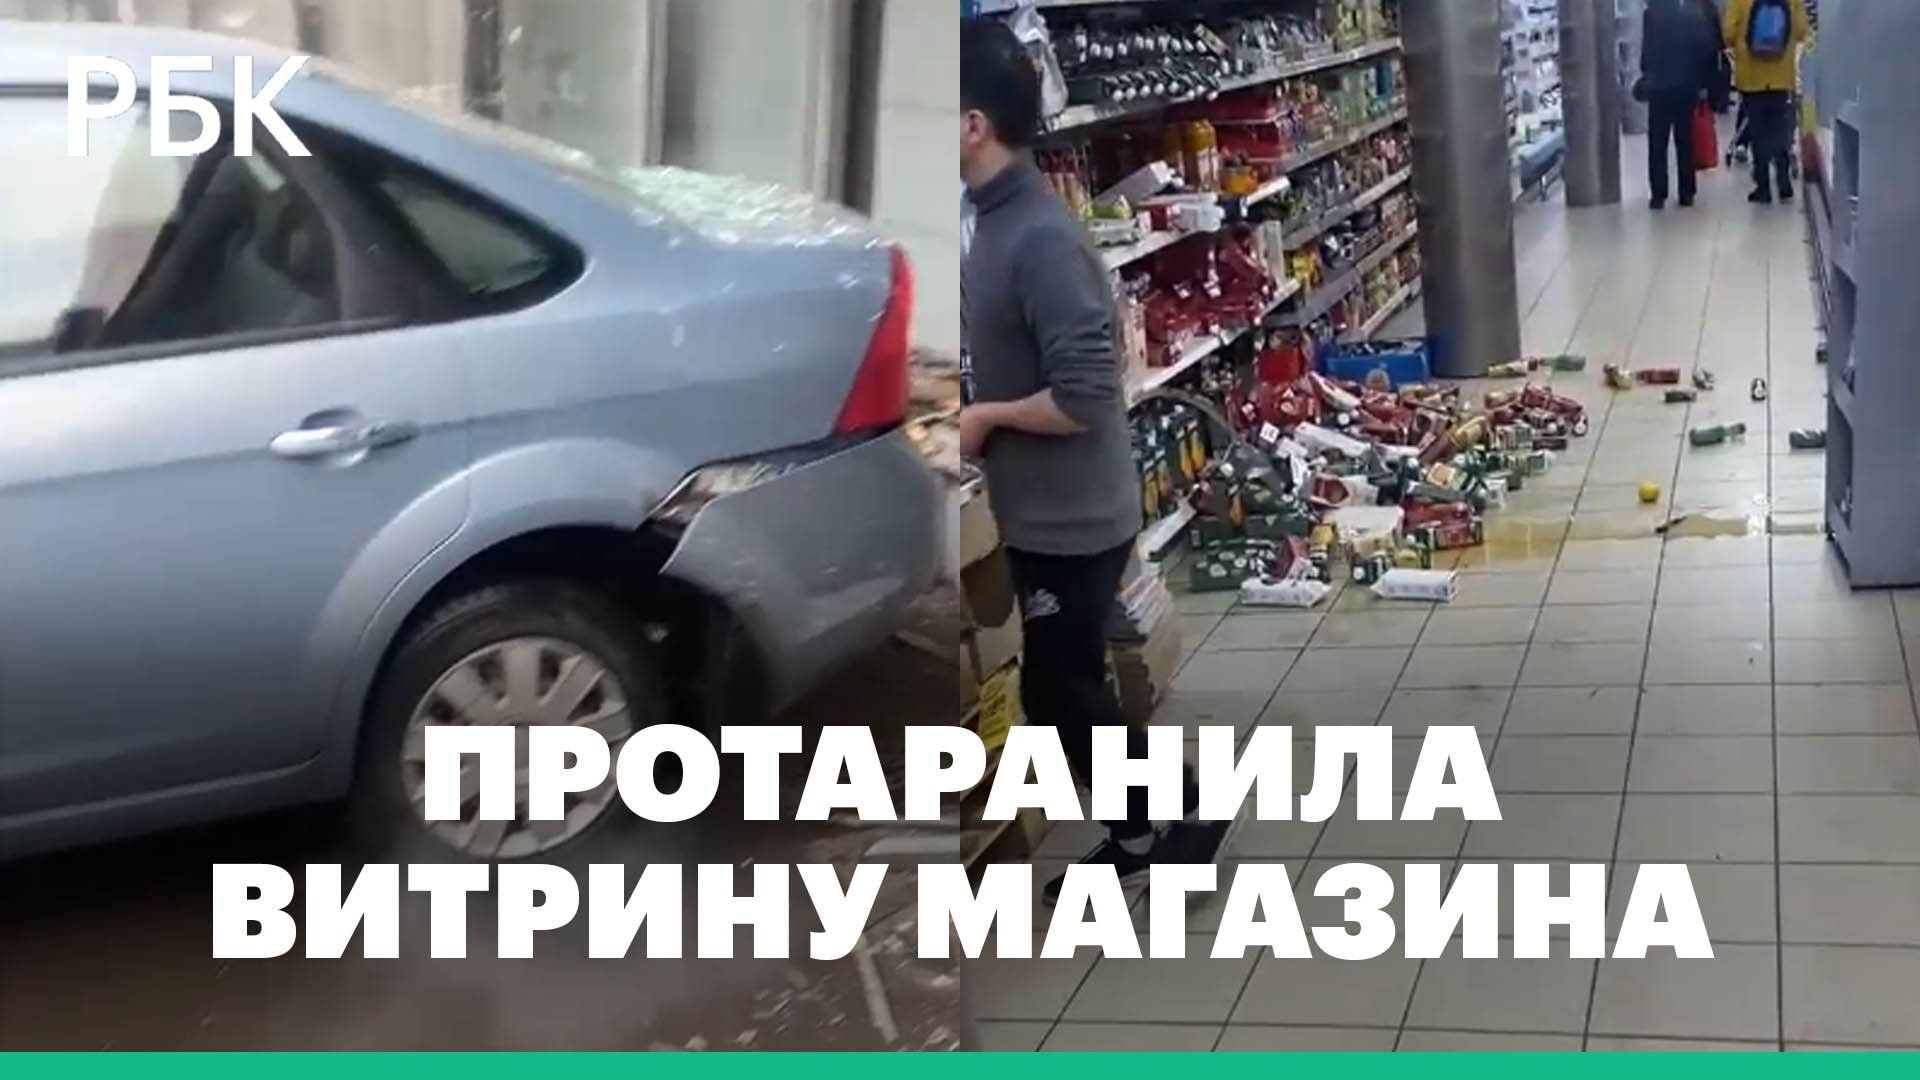 Женщина за рулем автомобиля въехала в витрину магазина в Чертаново